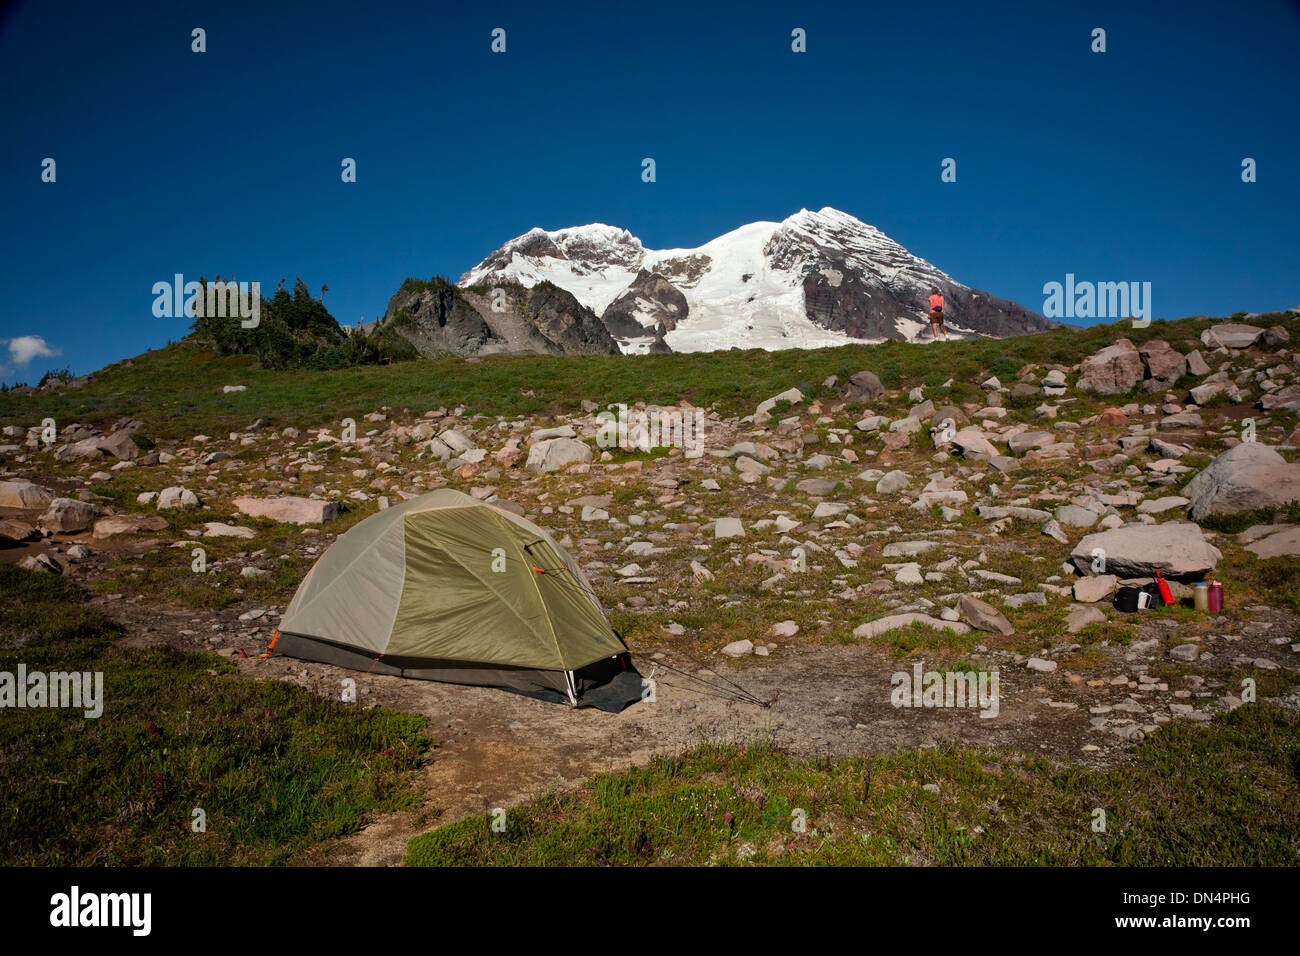 WASHINGTON - Camping dans les prés de l'Tokaloo Zone alpine du mont Rainier National Park. Banque D'Images